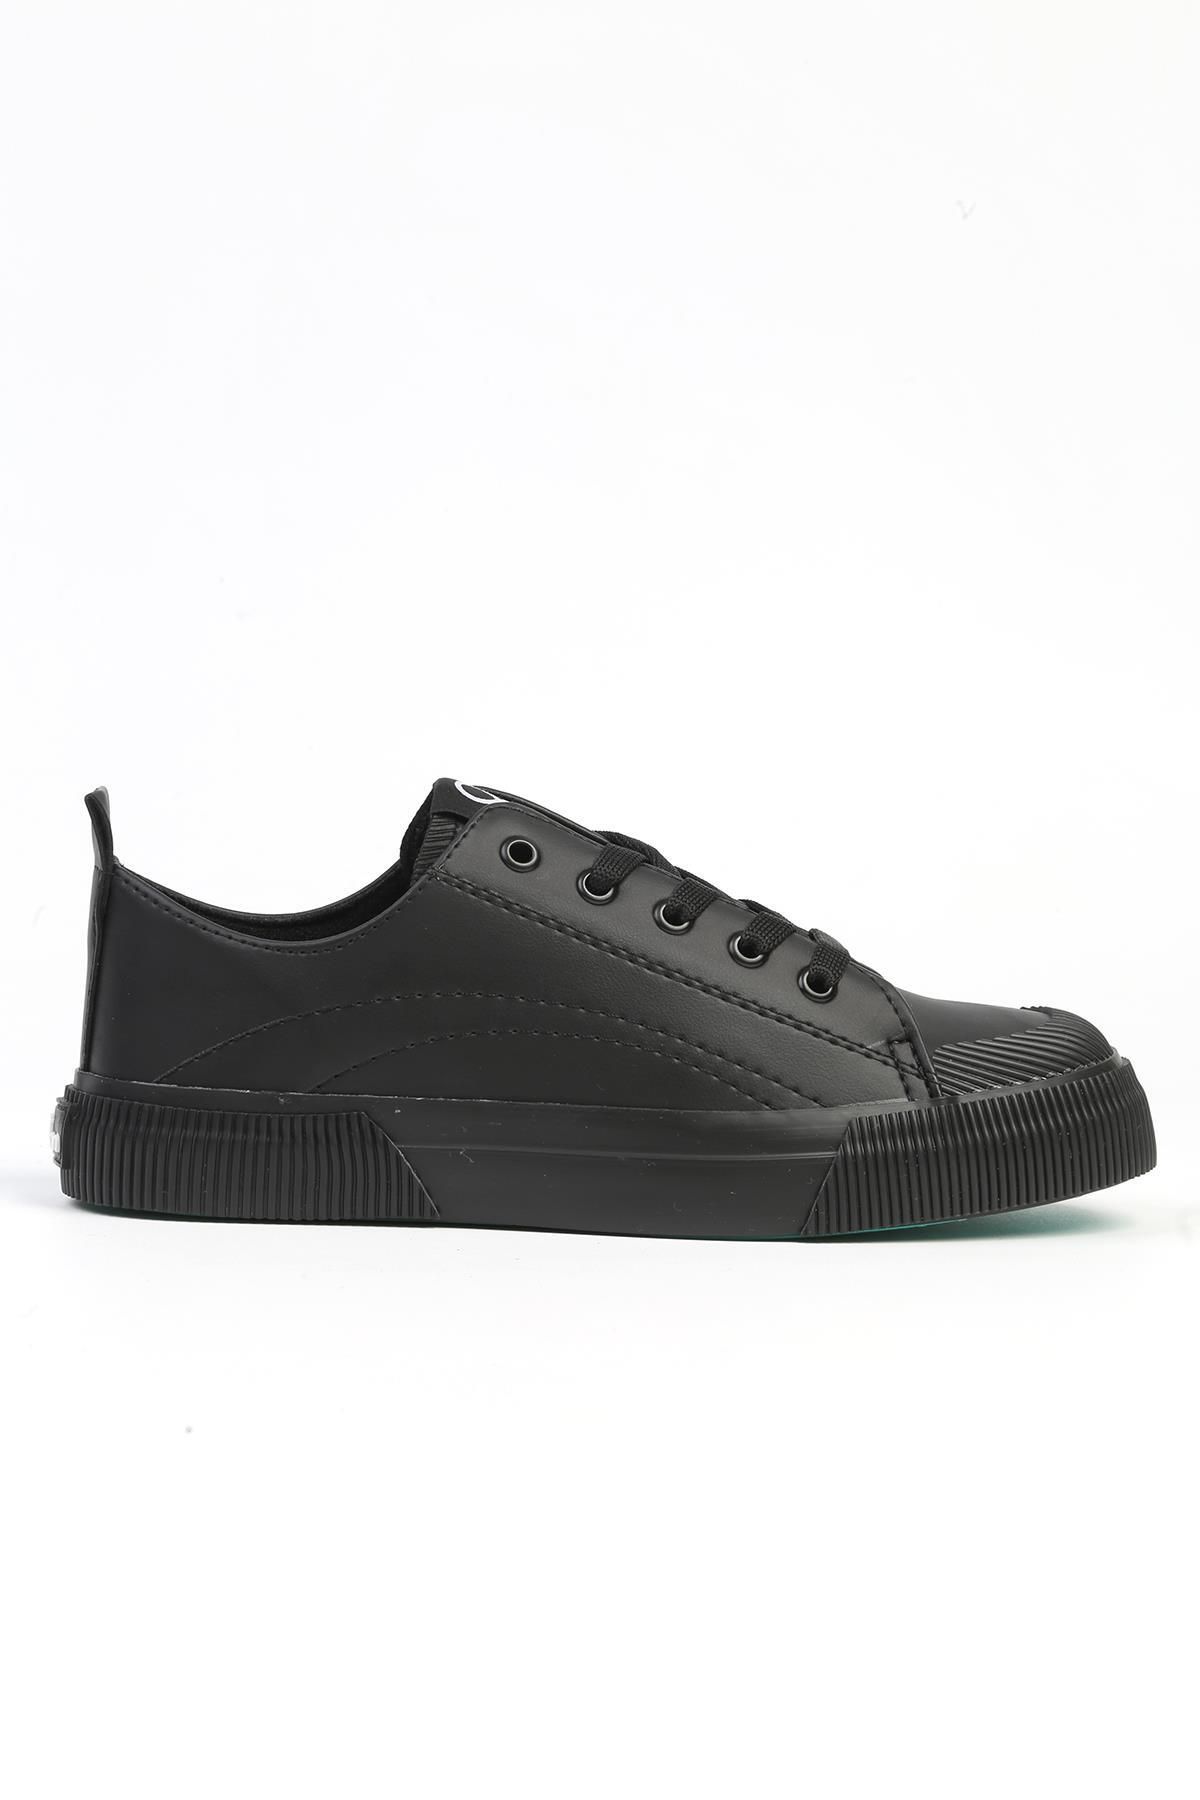 Benetton ® |BN-31034 - 3570 Siyah - Kadın Spor Ayakkabı